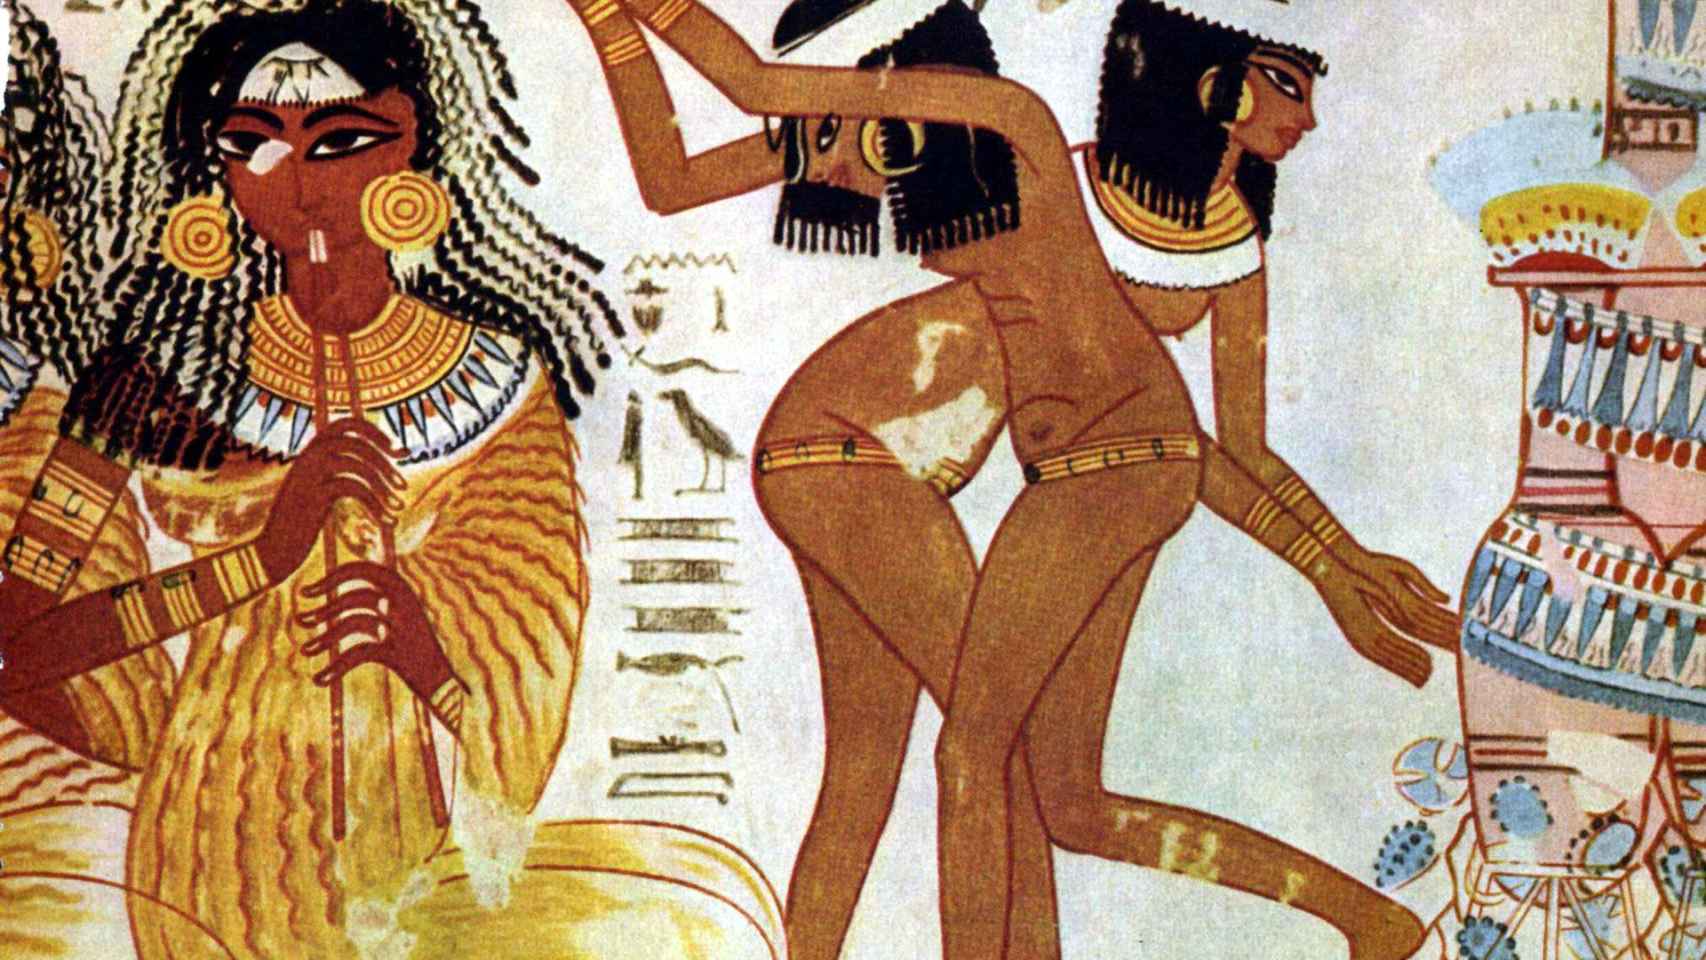 Mujeres desnudad bailando en la tumba de Nebamun (1350 a.C.).